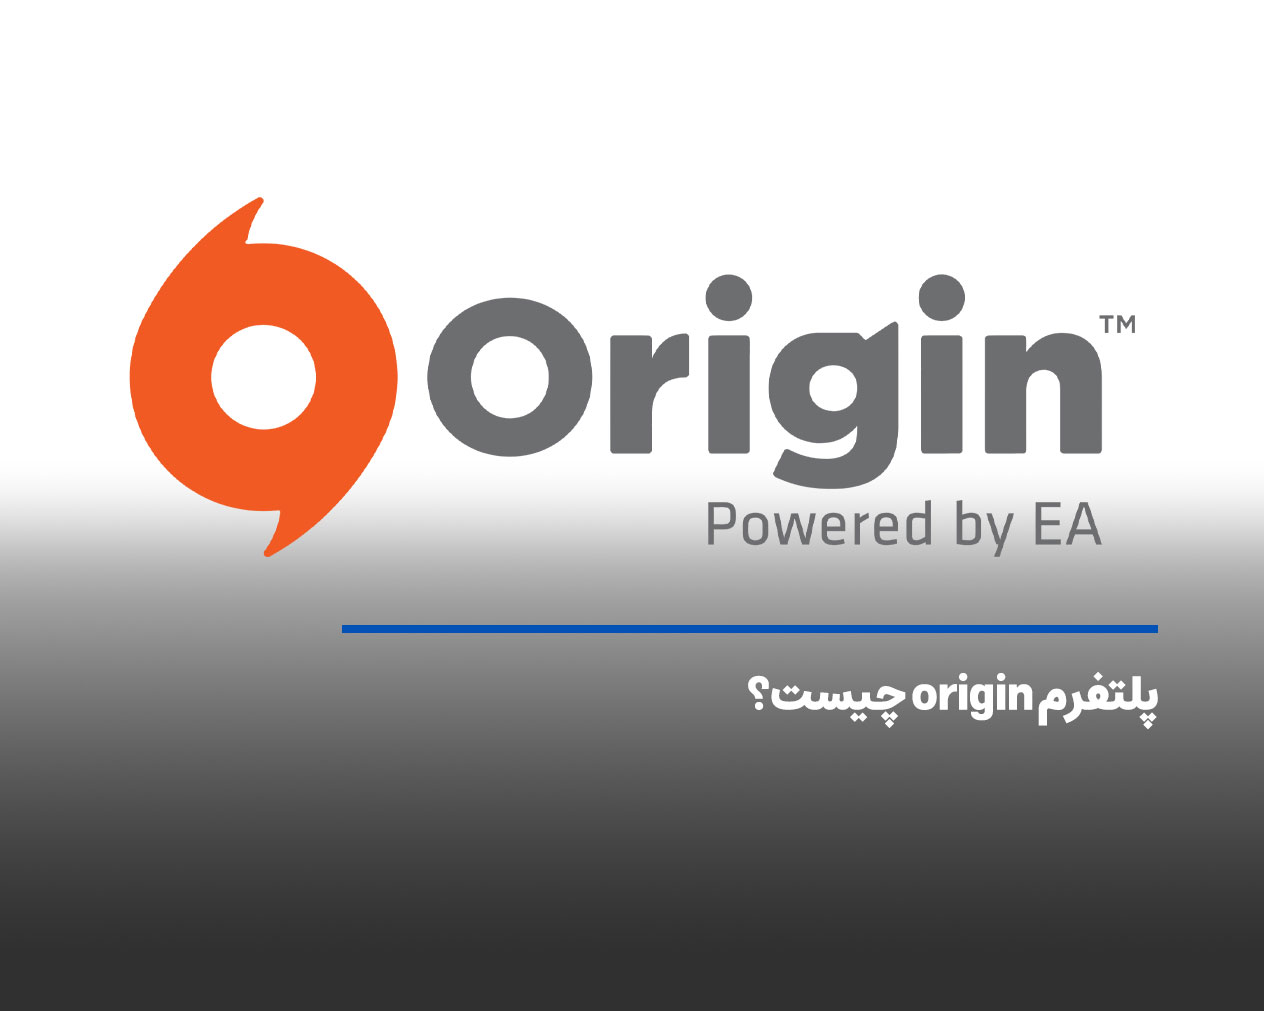 پلتفرم origin چیست؟ آشنایی با کاربردهای نرم‌افزار اوریجین